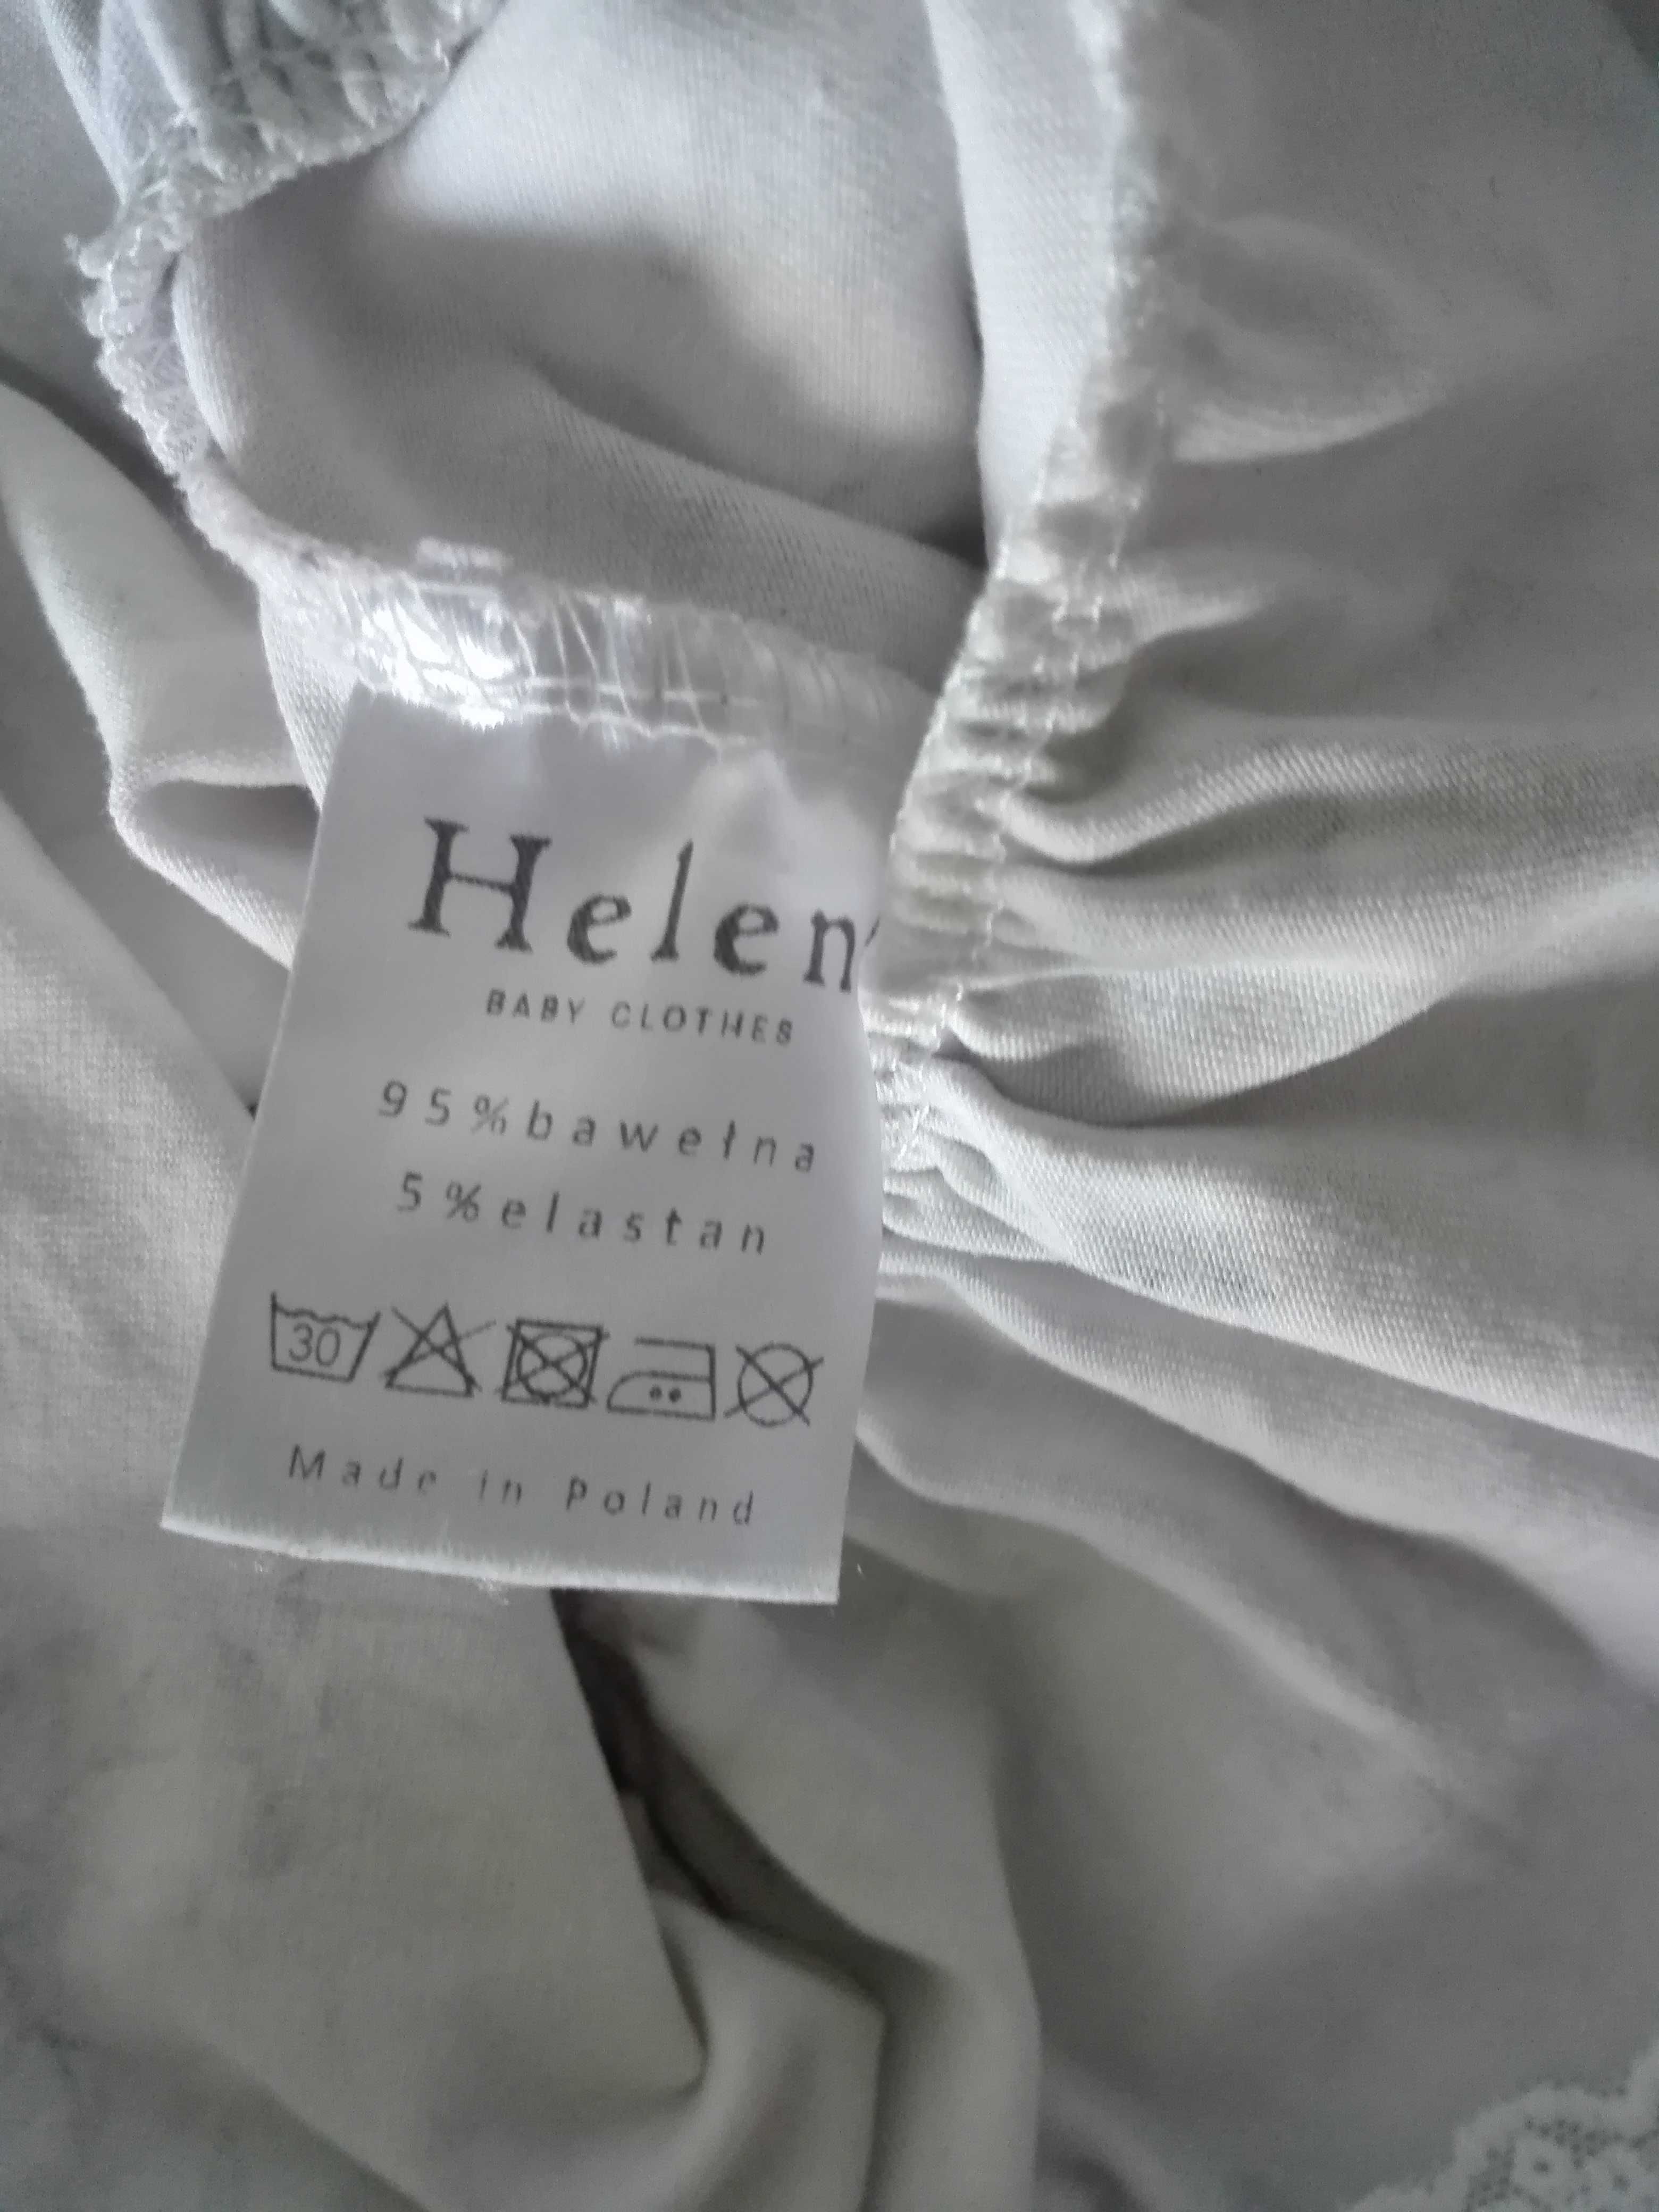 Sukienka biała w kwiaty firmy Helen r.74